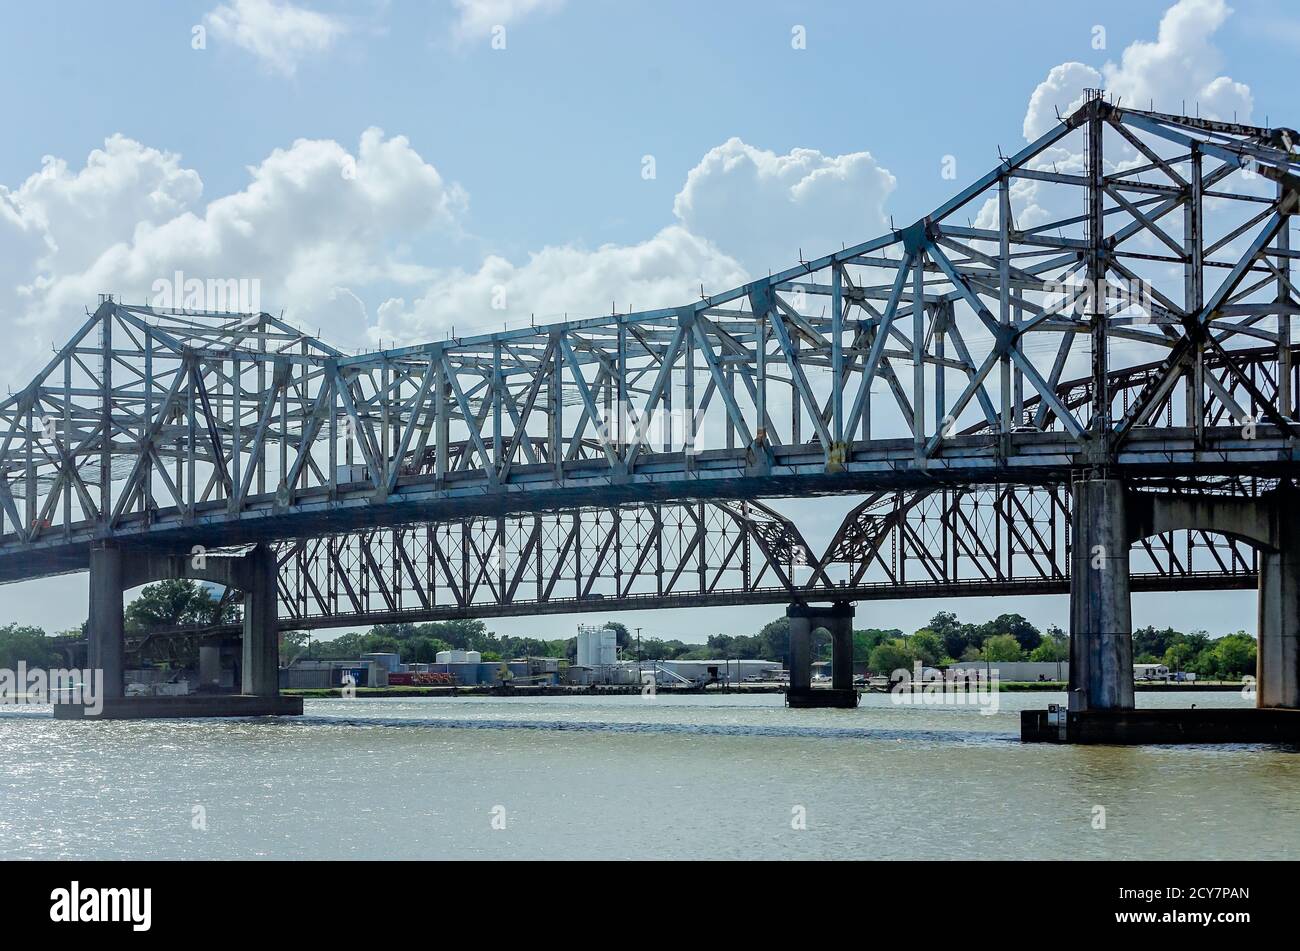 The E.J. 'Lionel' Grizzaffi Bridge and Long-Allen Bridge are pictured, Aug. 25, 2020, in Morgan City, Louisiana. Stock Photo